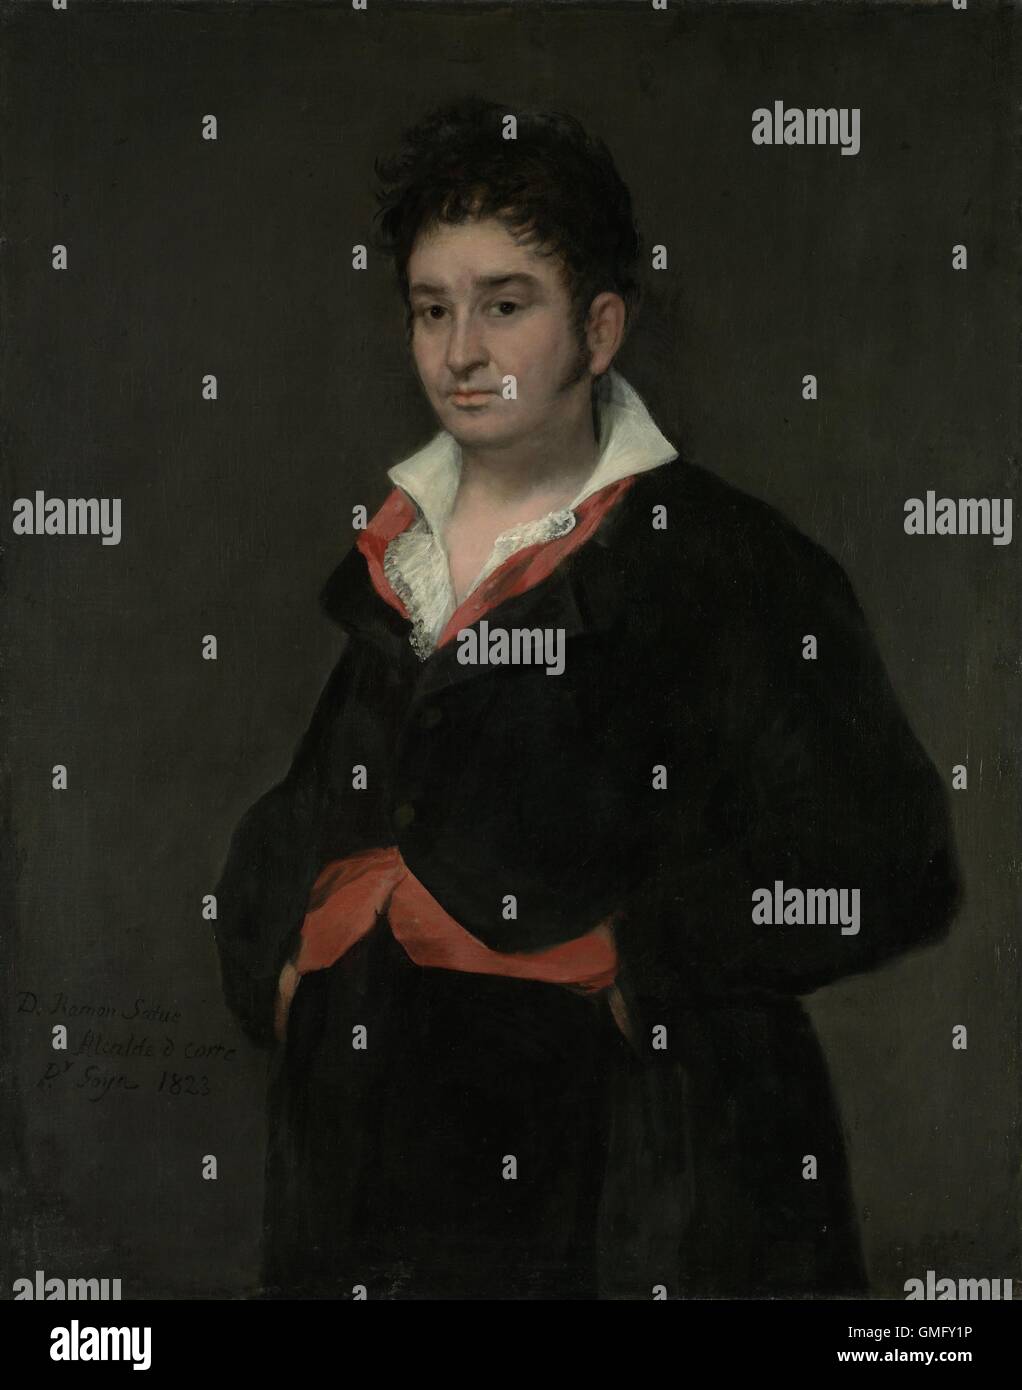 Portrait de Don Ramon Satue, par Francisco Goya, 1823, la peinture espagnole, huile sur toile. Satue, un juge de la plus haute cour de Castille, a pris une pose avec son col ouvert. Comme l'informalité indique qu'il pourrait avoir été un ami proche de 76 ans, Goya (BSLOC 2016 2 60) Banque D'Images